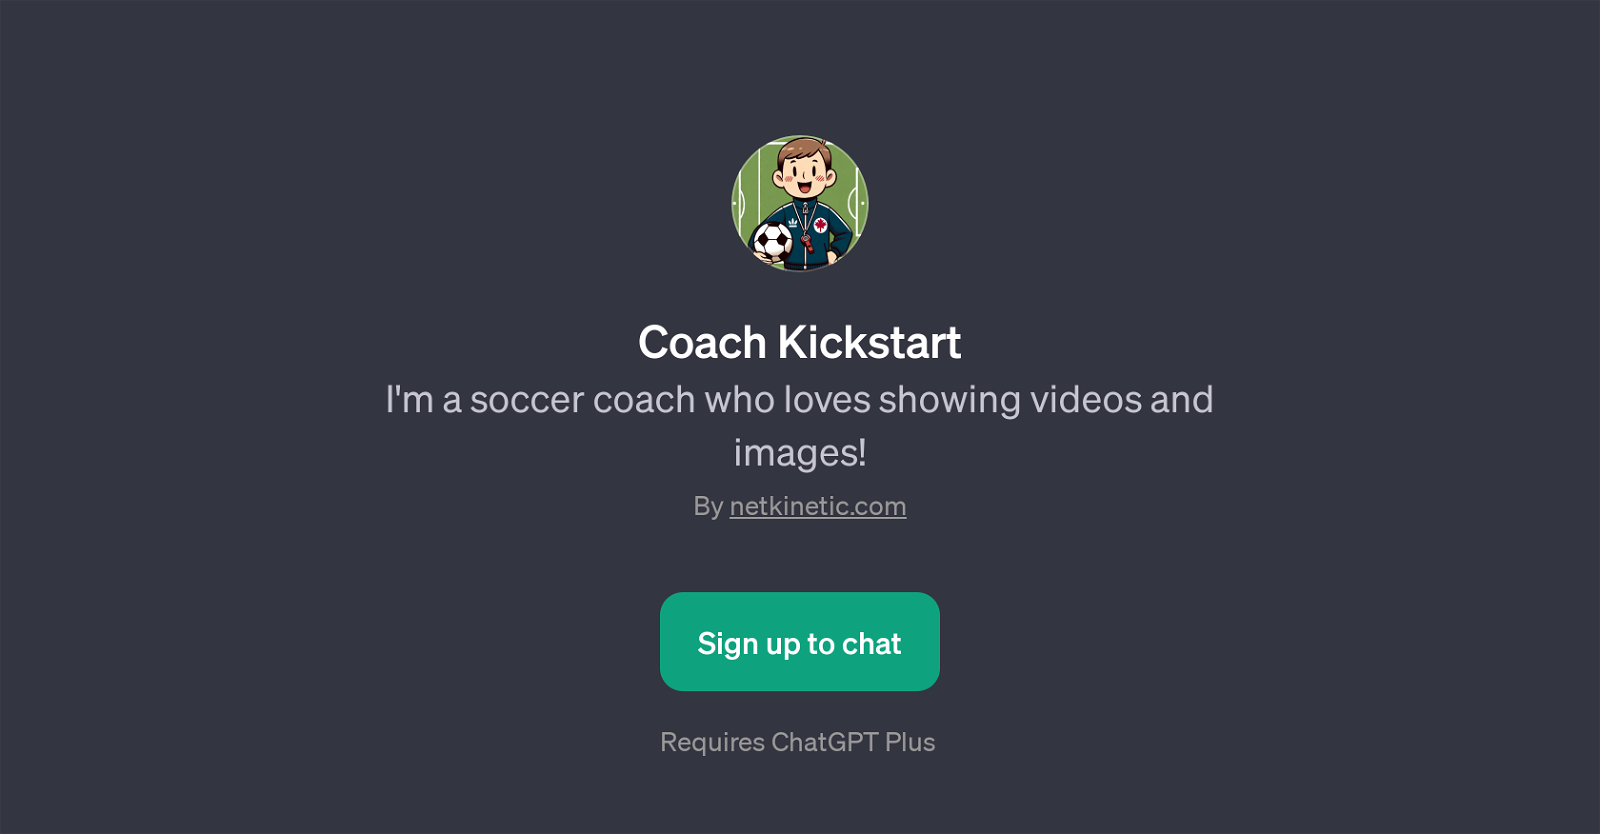 Coach Kickstart website